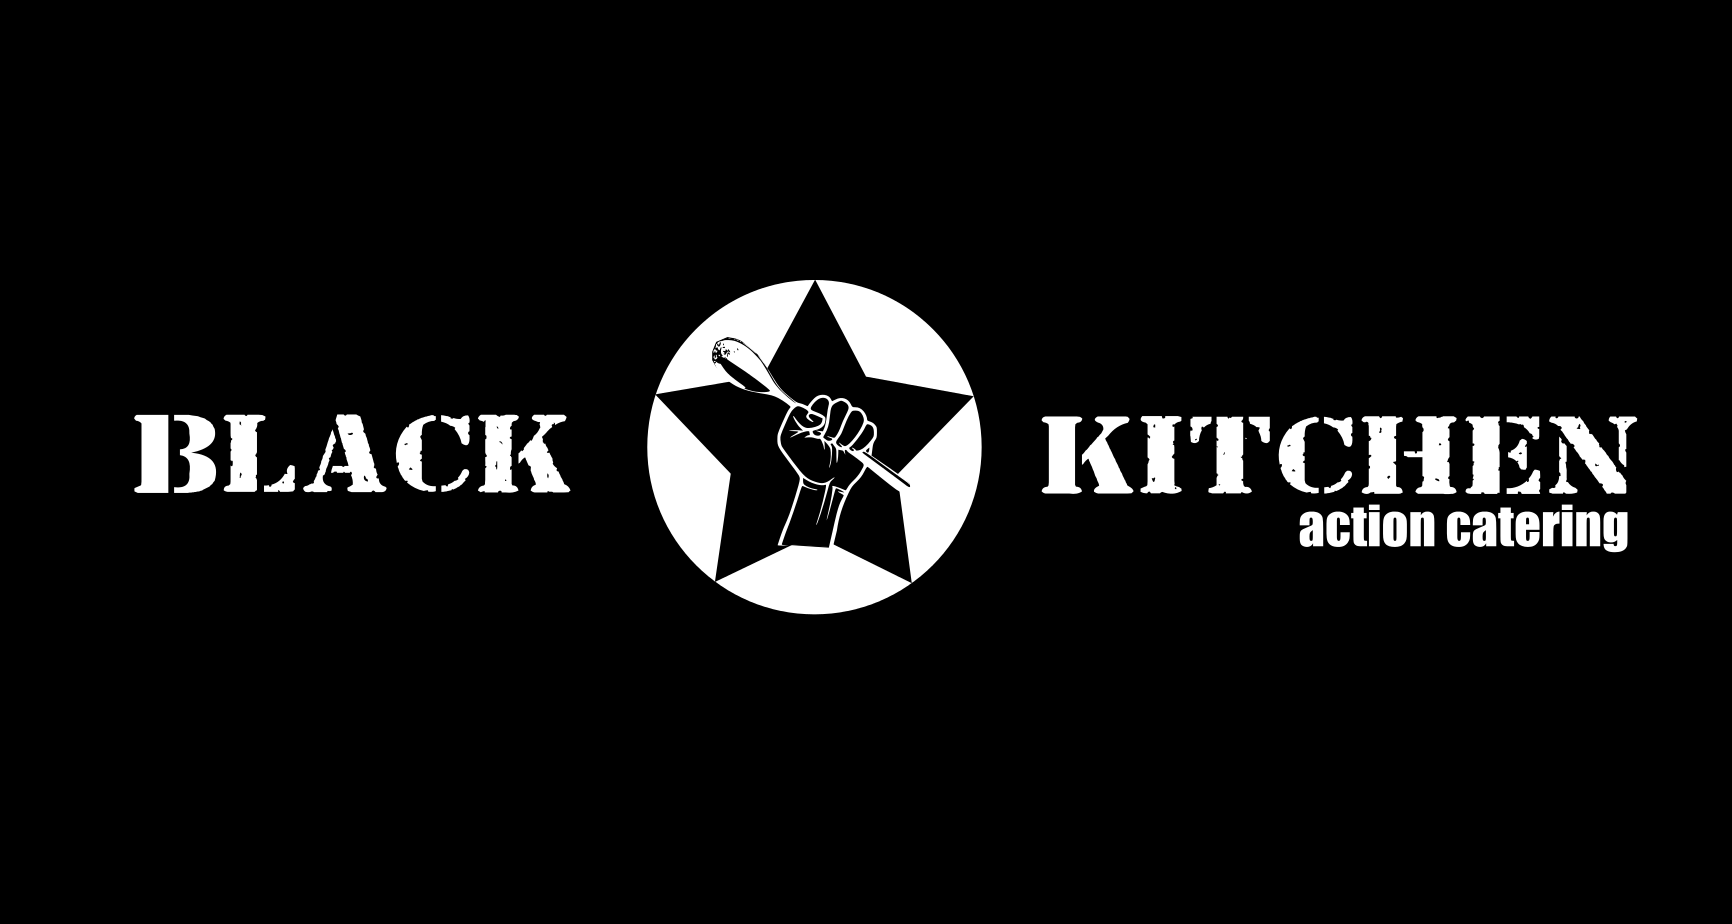 Black Kitchen bei AFD-Gegenprotesten